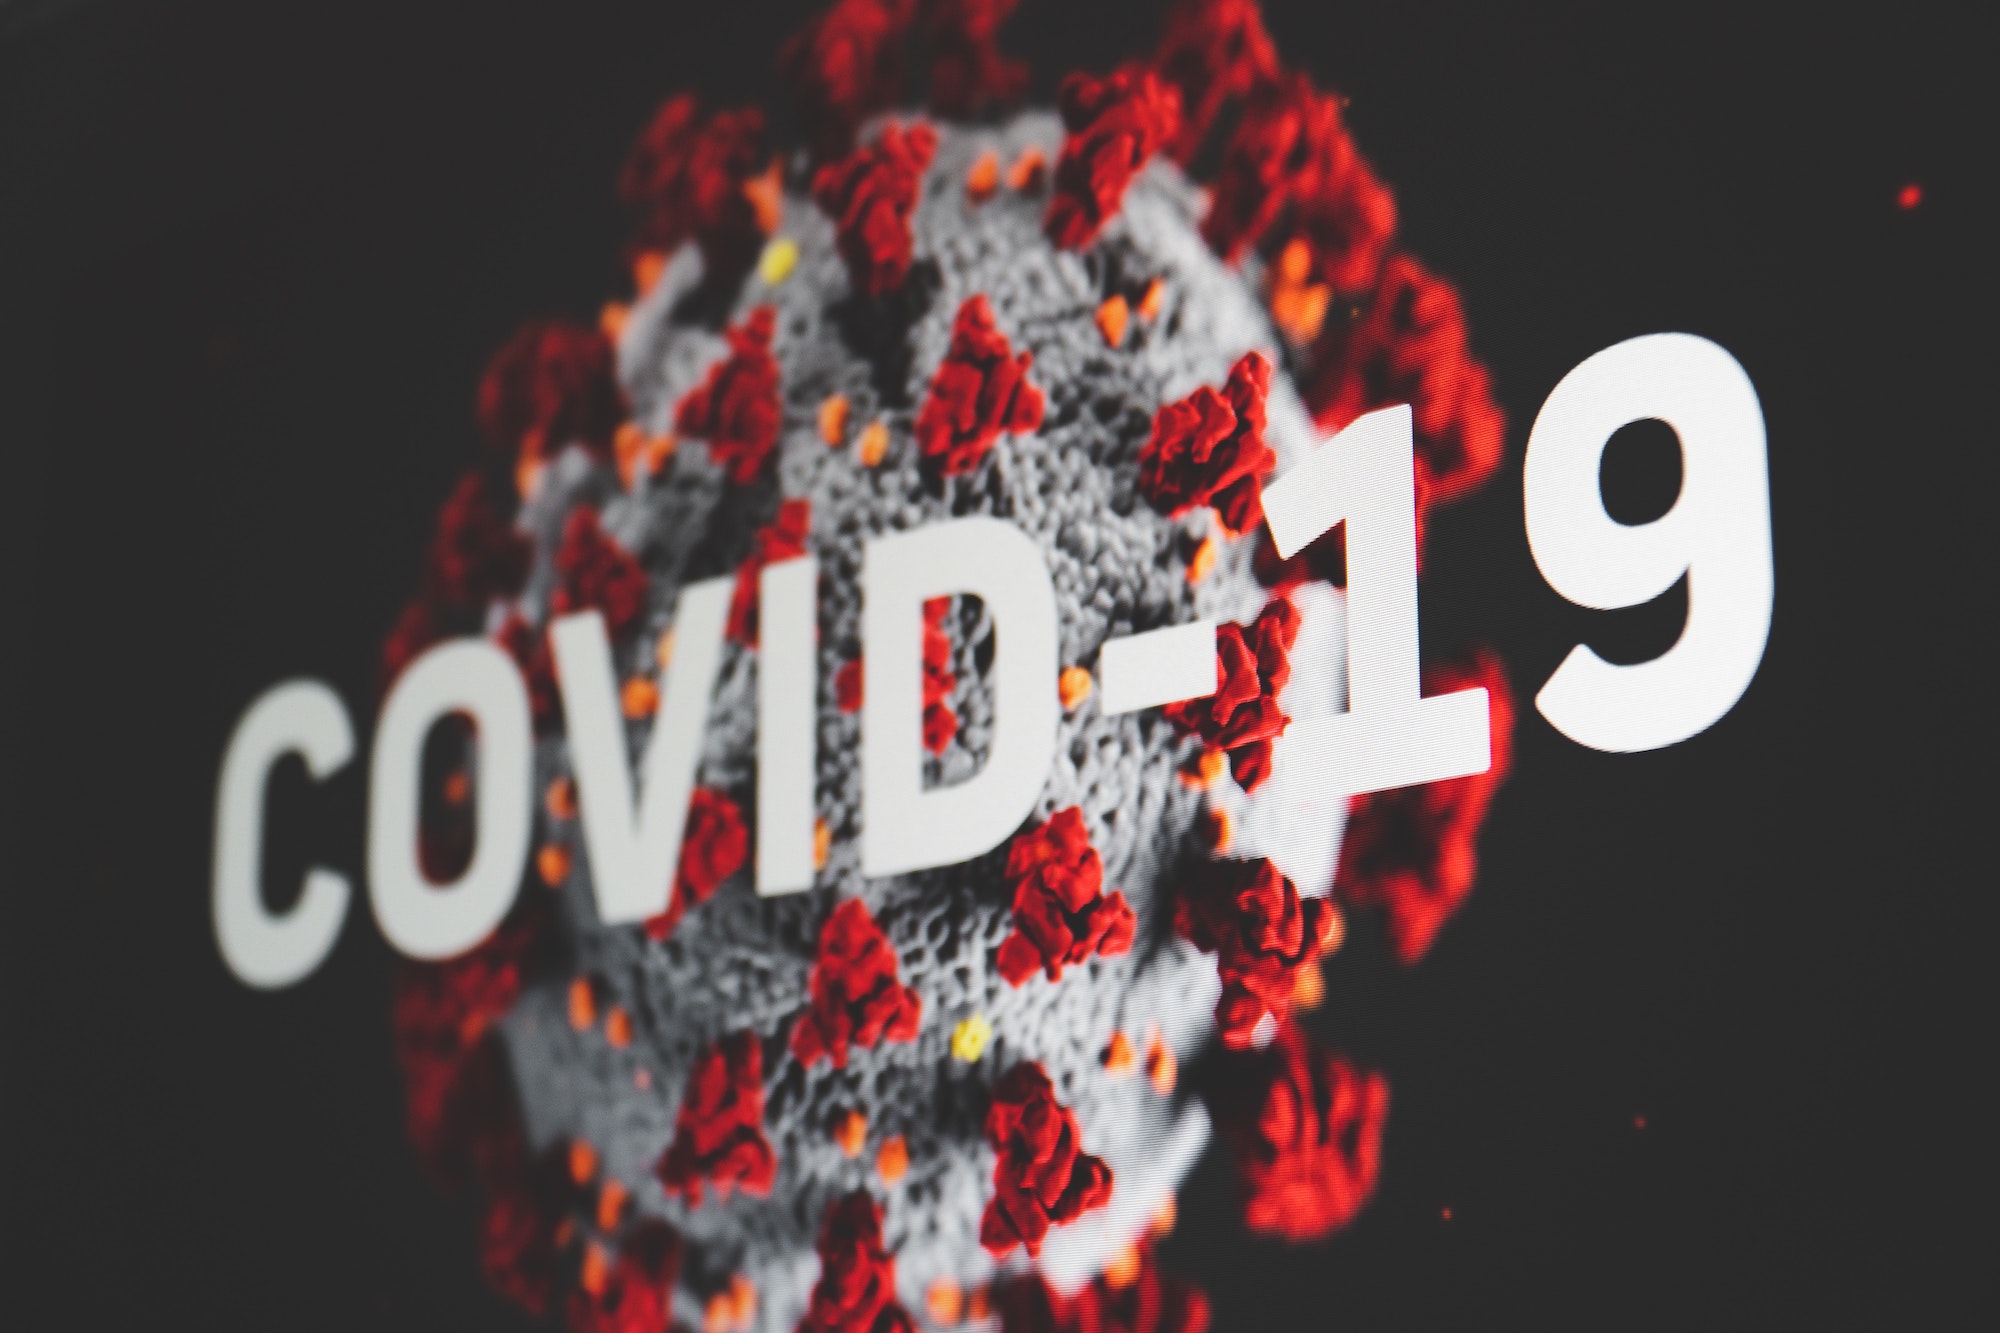 Coronavírus (COVID-19) na Austrália: informação para o seu intercâmbio